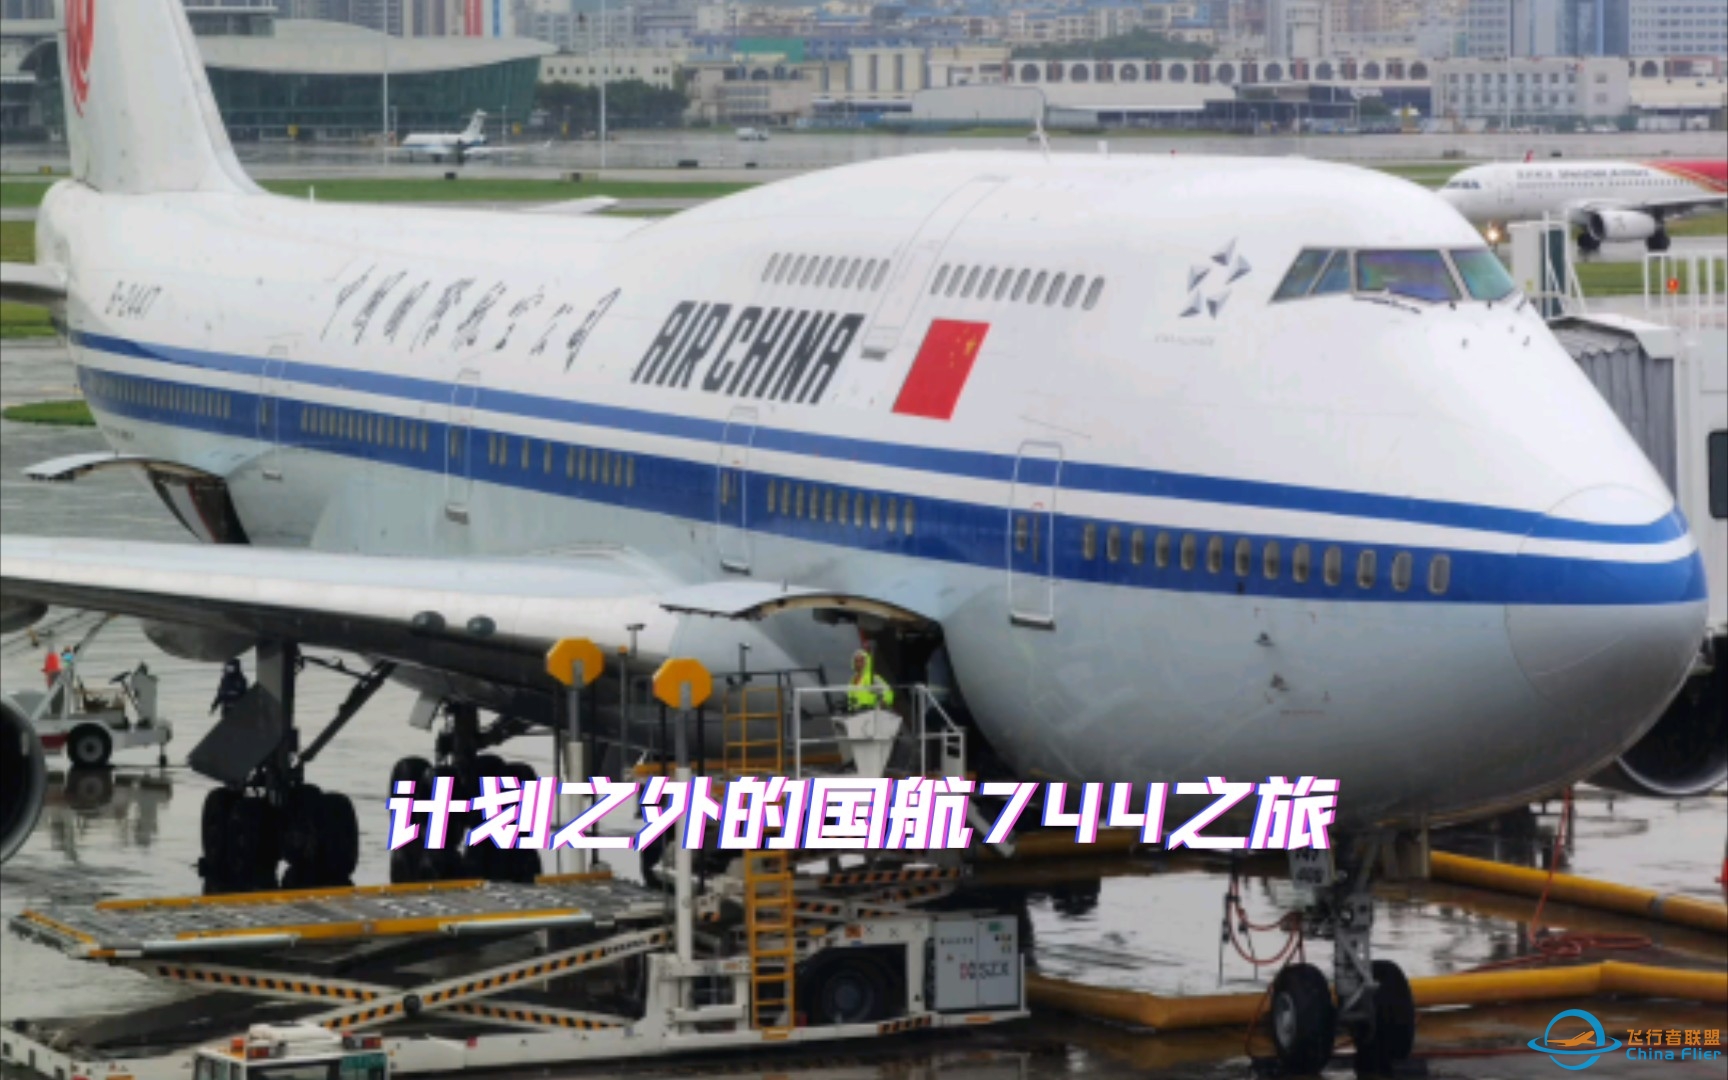 从机龄0.6年到28.6年，原本想体验深航最新空客A321NX，却意外坐上国航第二老的波音747-400（B-2447）-7837 